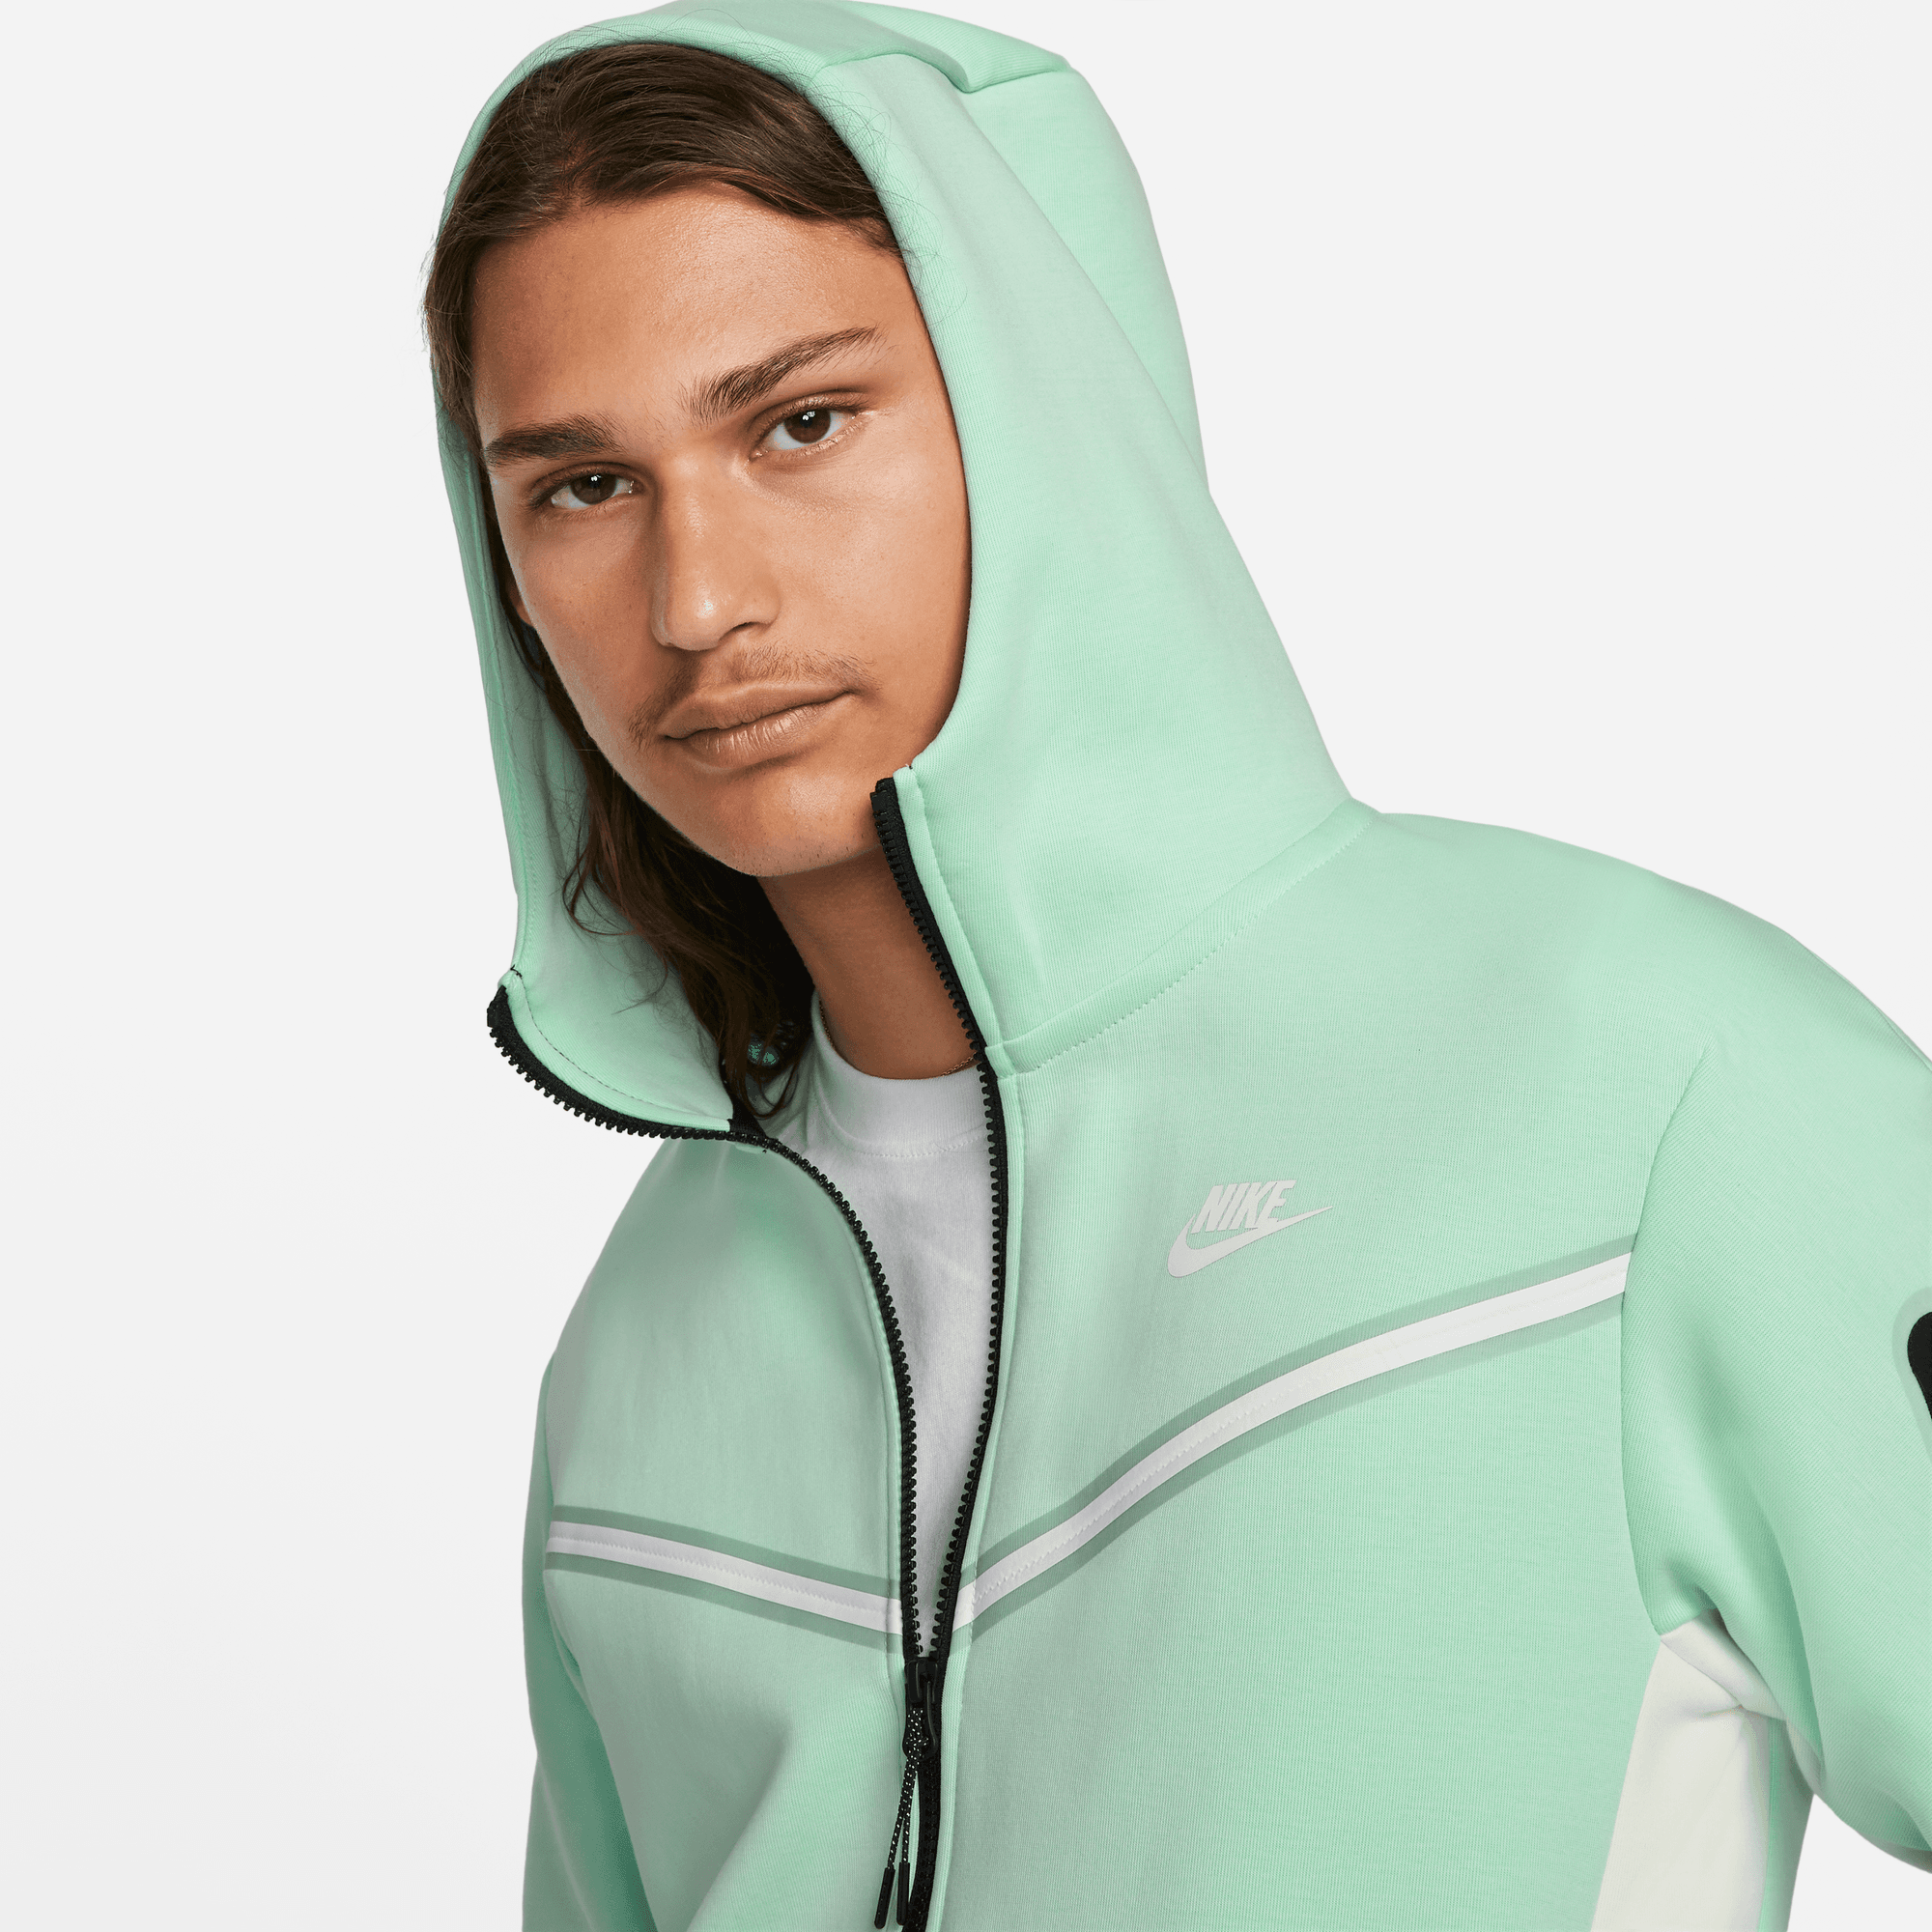 Nike Men's Sportswear Tech Fleece Full Zip Hoodie